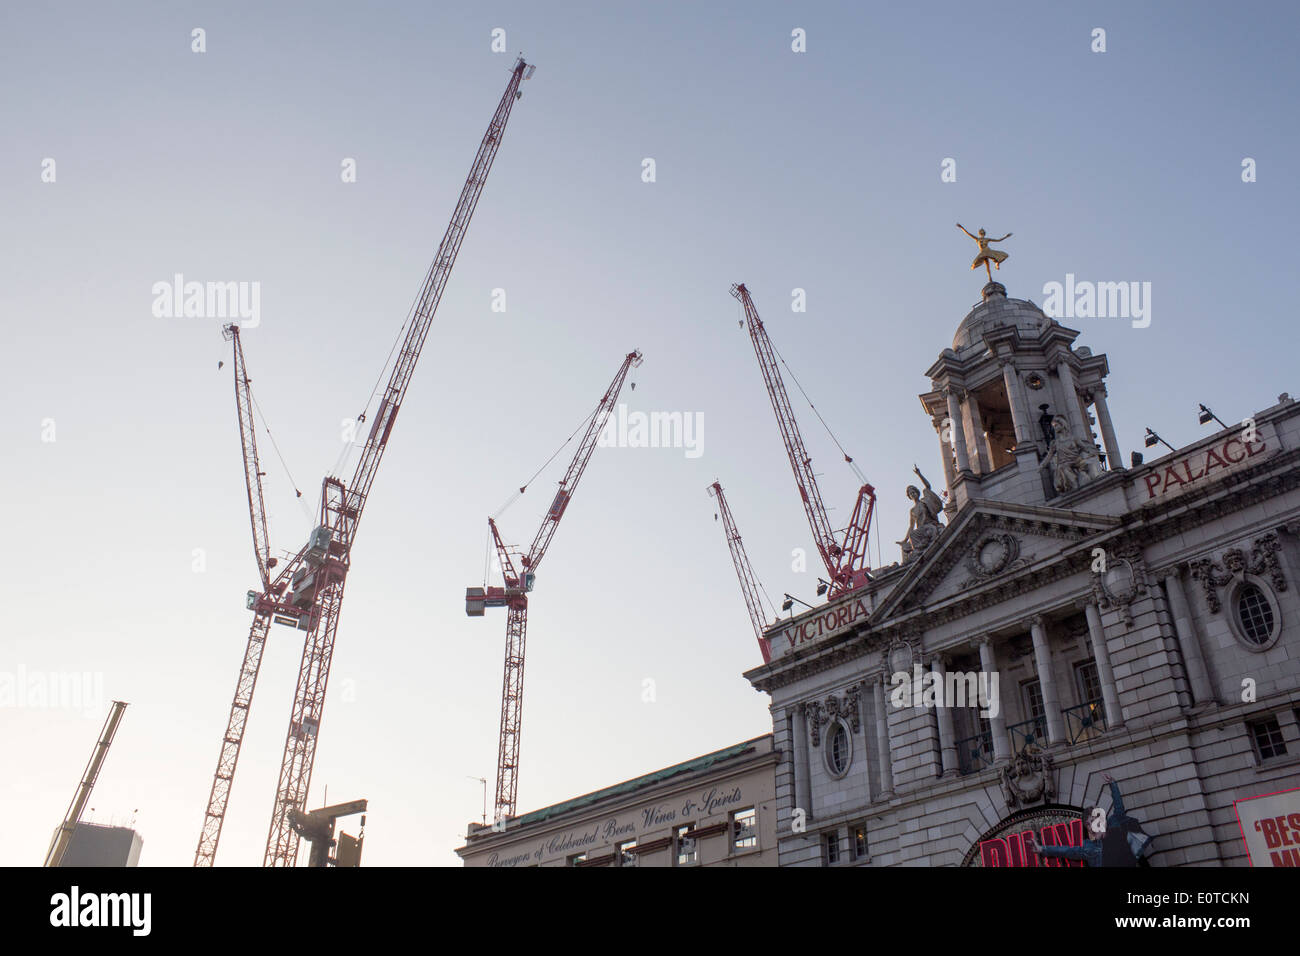 Cranes at construction site chantier à côté de Victoria Palace Theatre central London England UK Banque D'Images